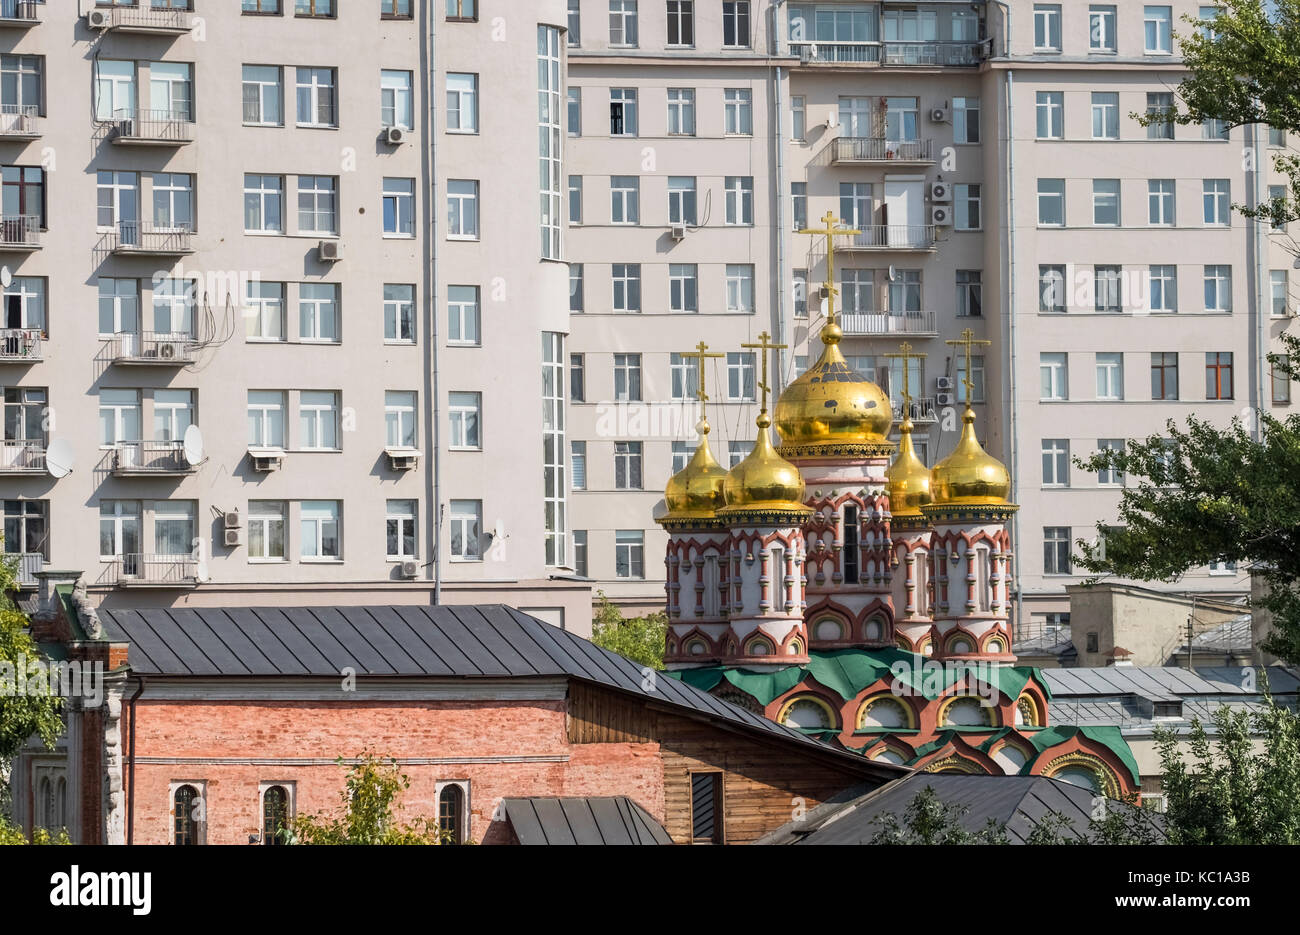 Les dômes dorés et les coupoles de l'église de Saint Nikolas sur Bersenevka Street, entouré de grands immeubles urbains modernes, Moscou, Russie. Banque D'Images